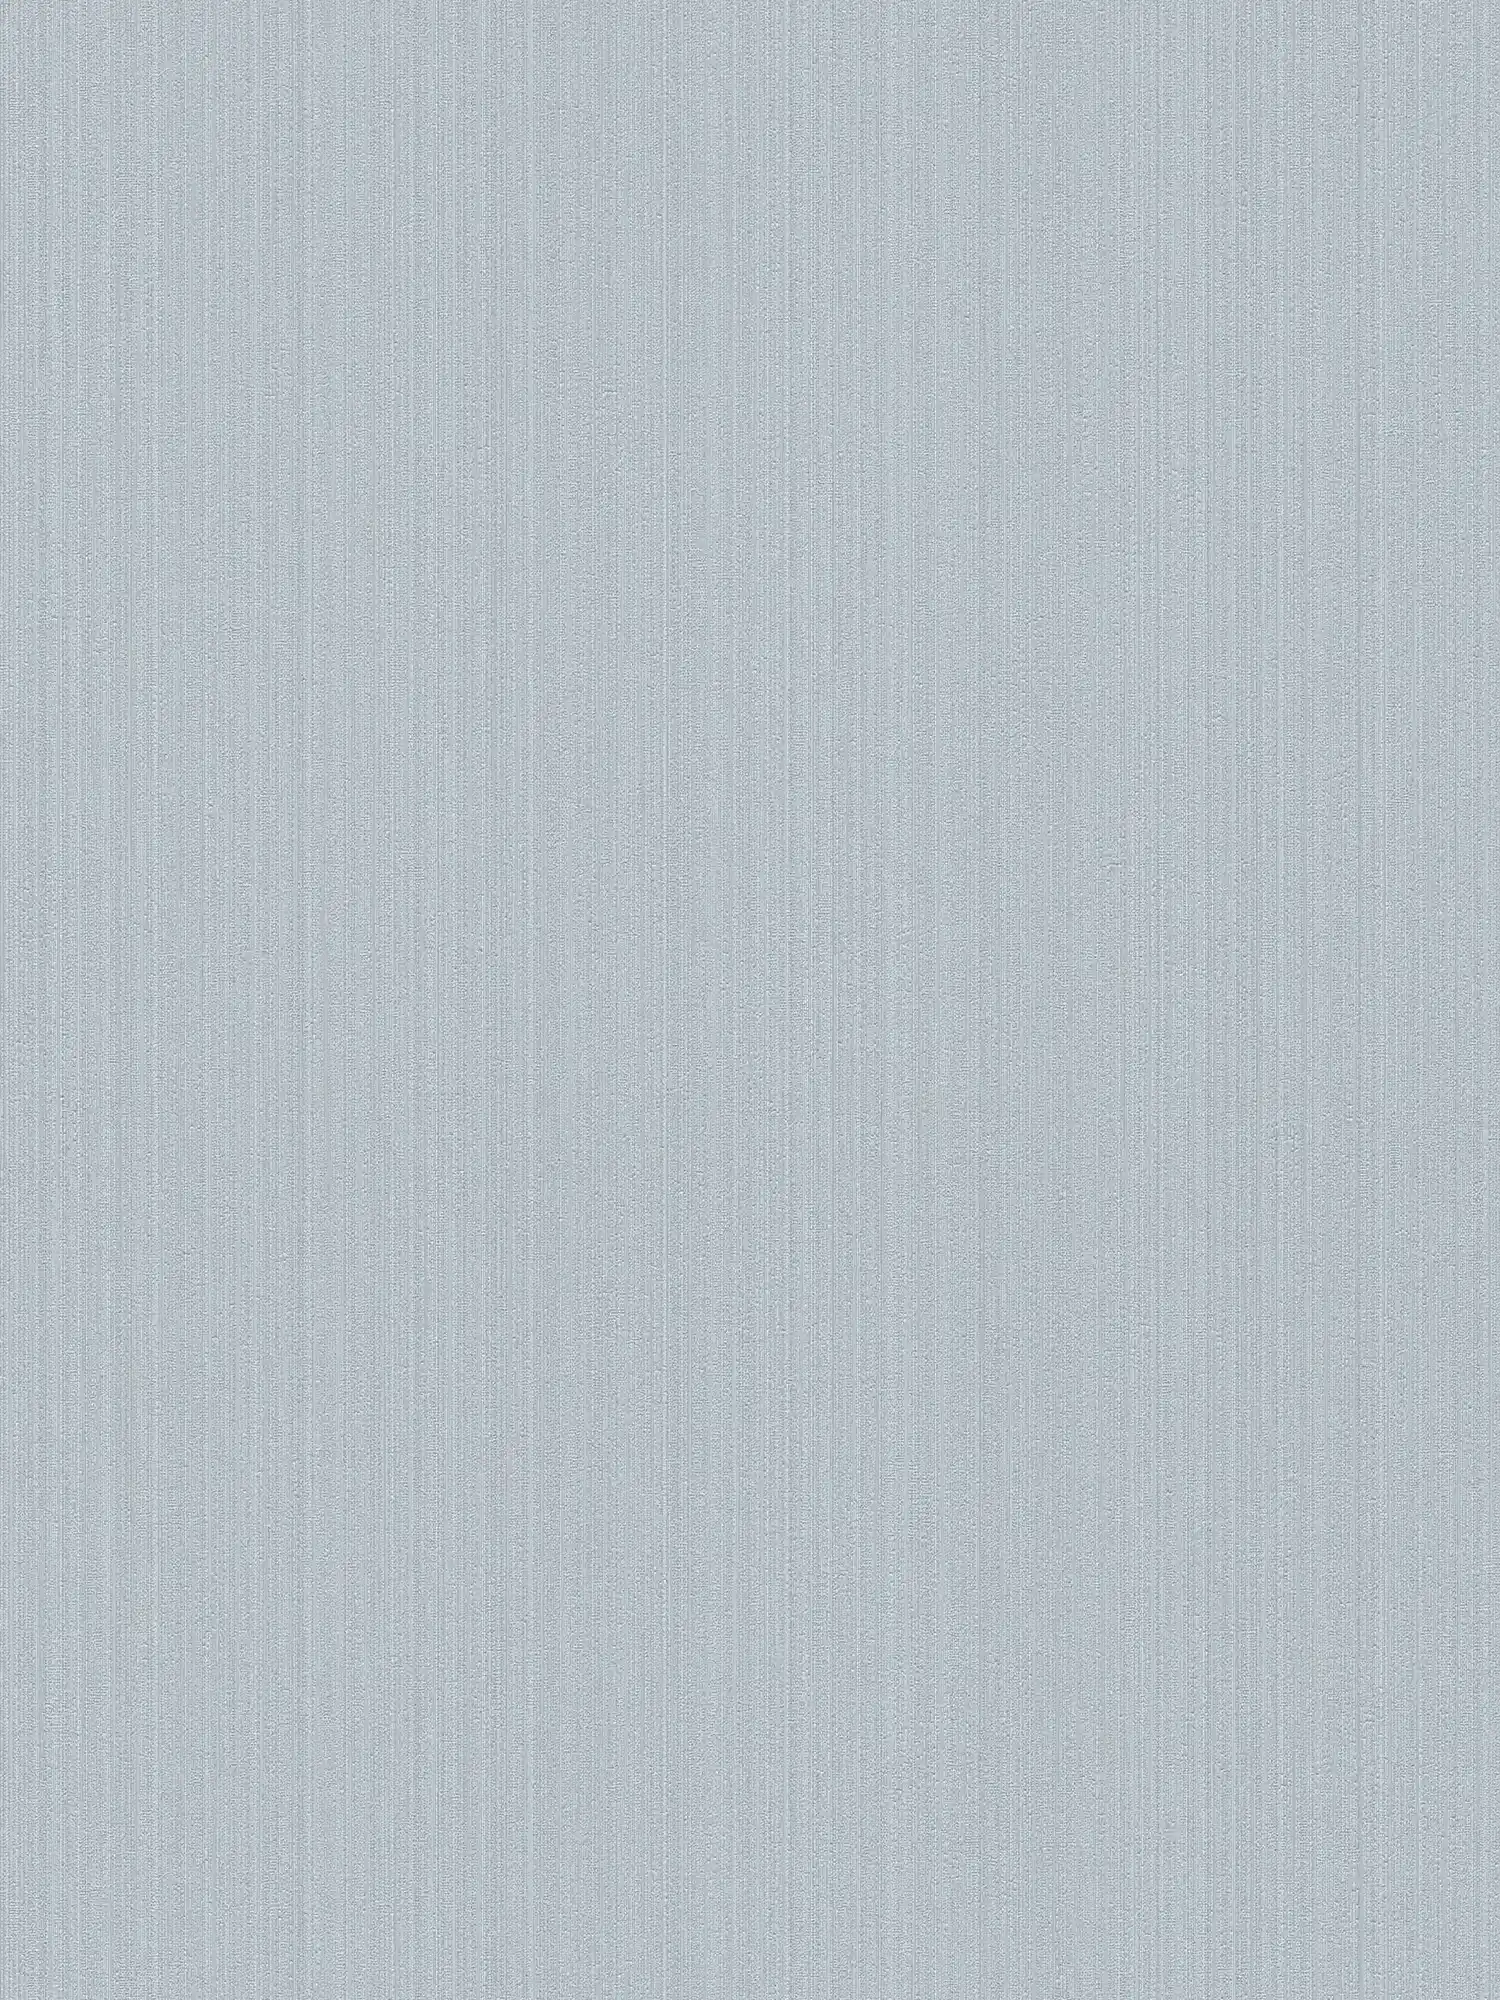 Non-woven wallpaper dove grey satin, plain with texture effect
